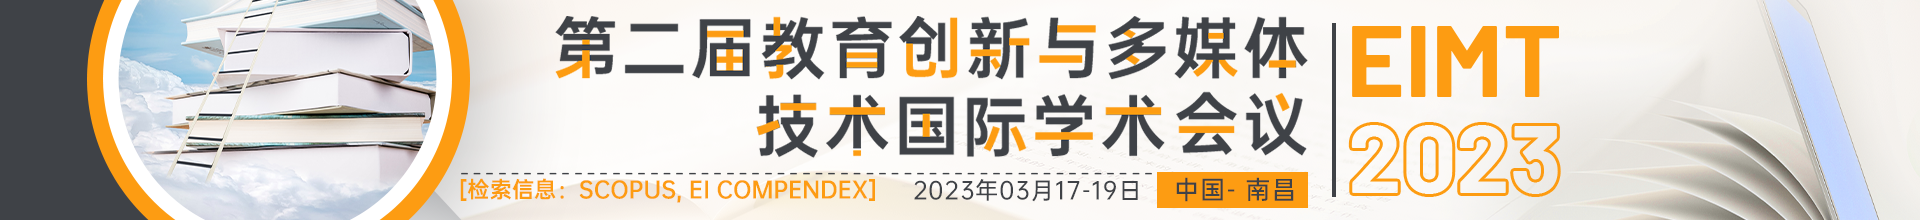 03月南昌- EIMT 2023会议云banner-20220914.psd.png